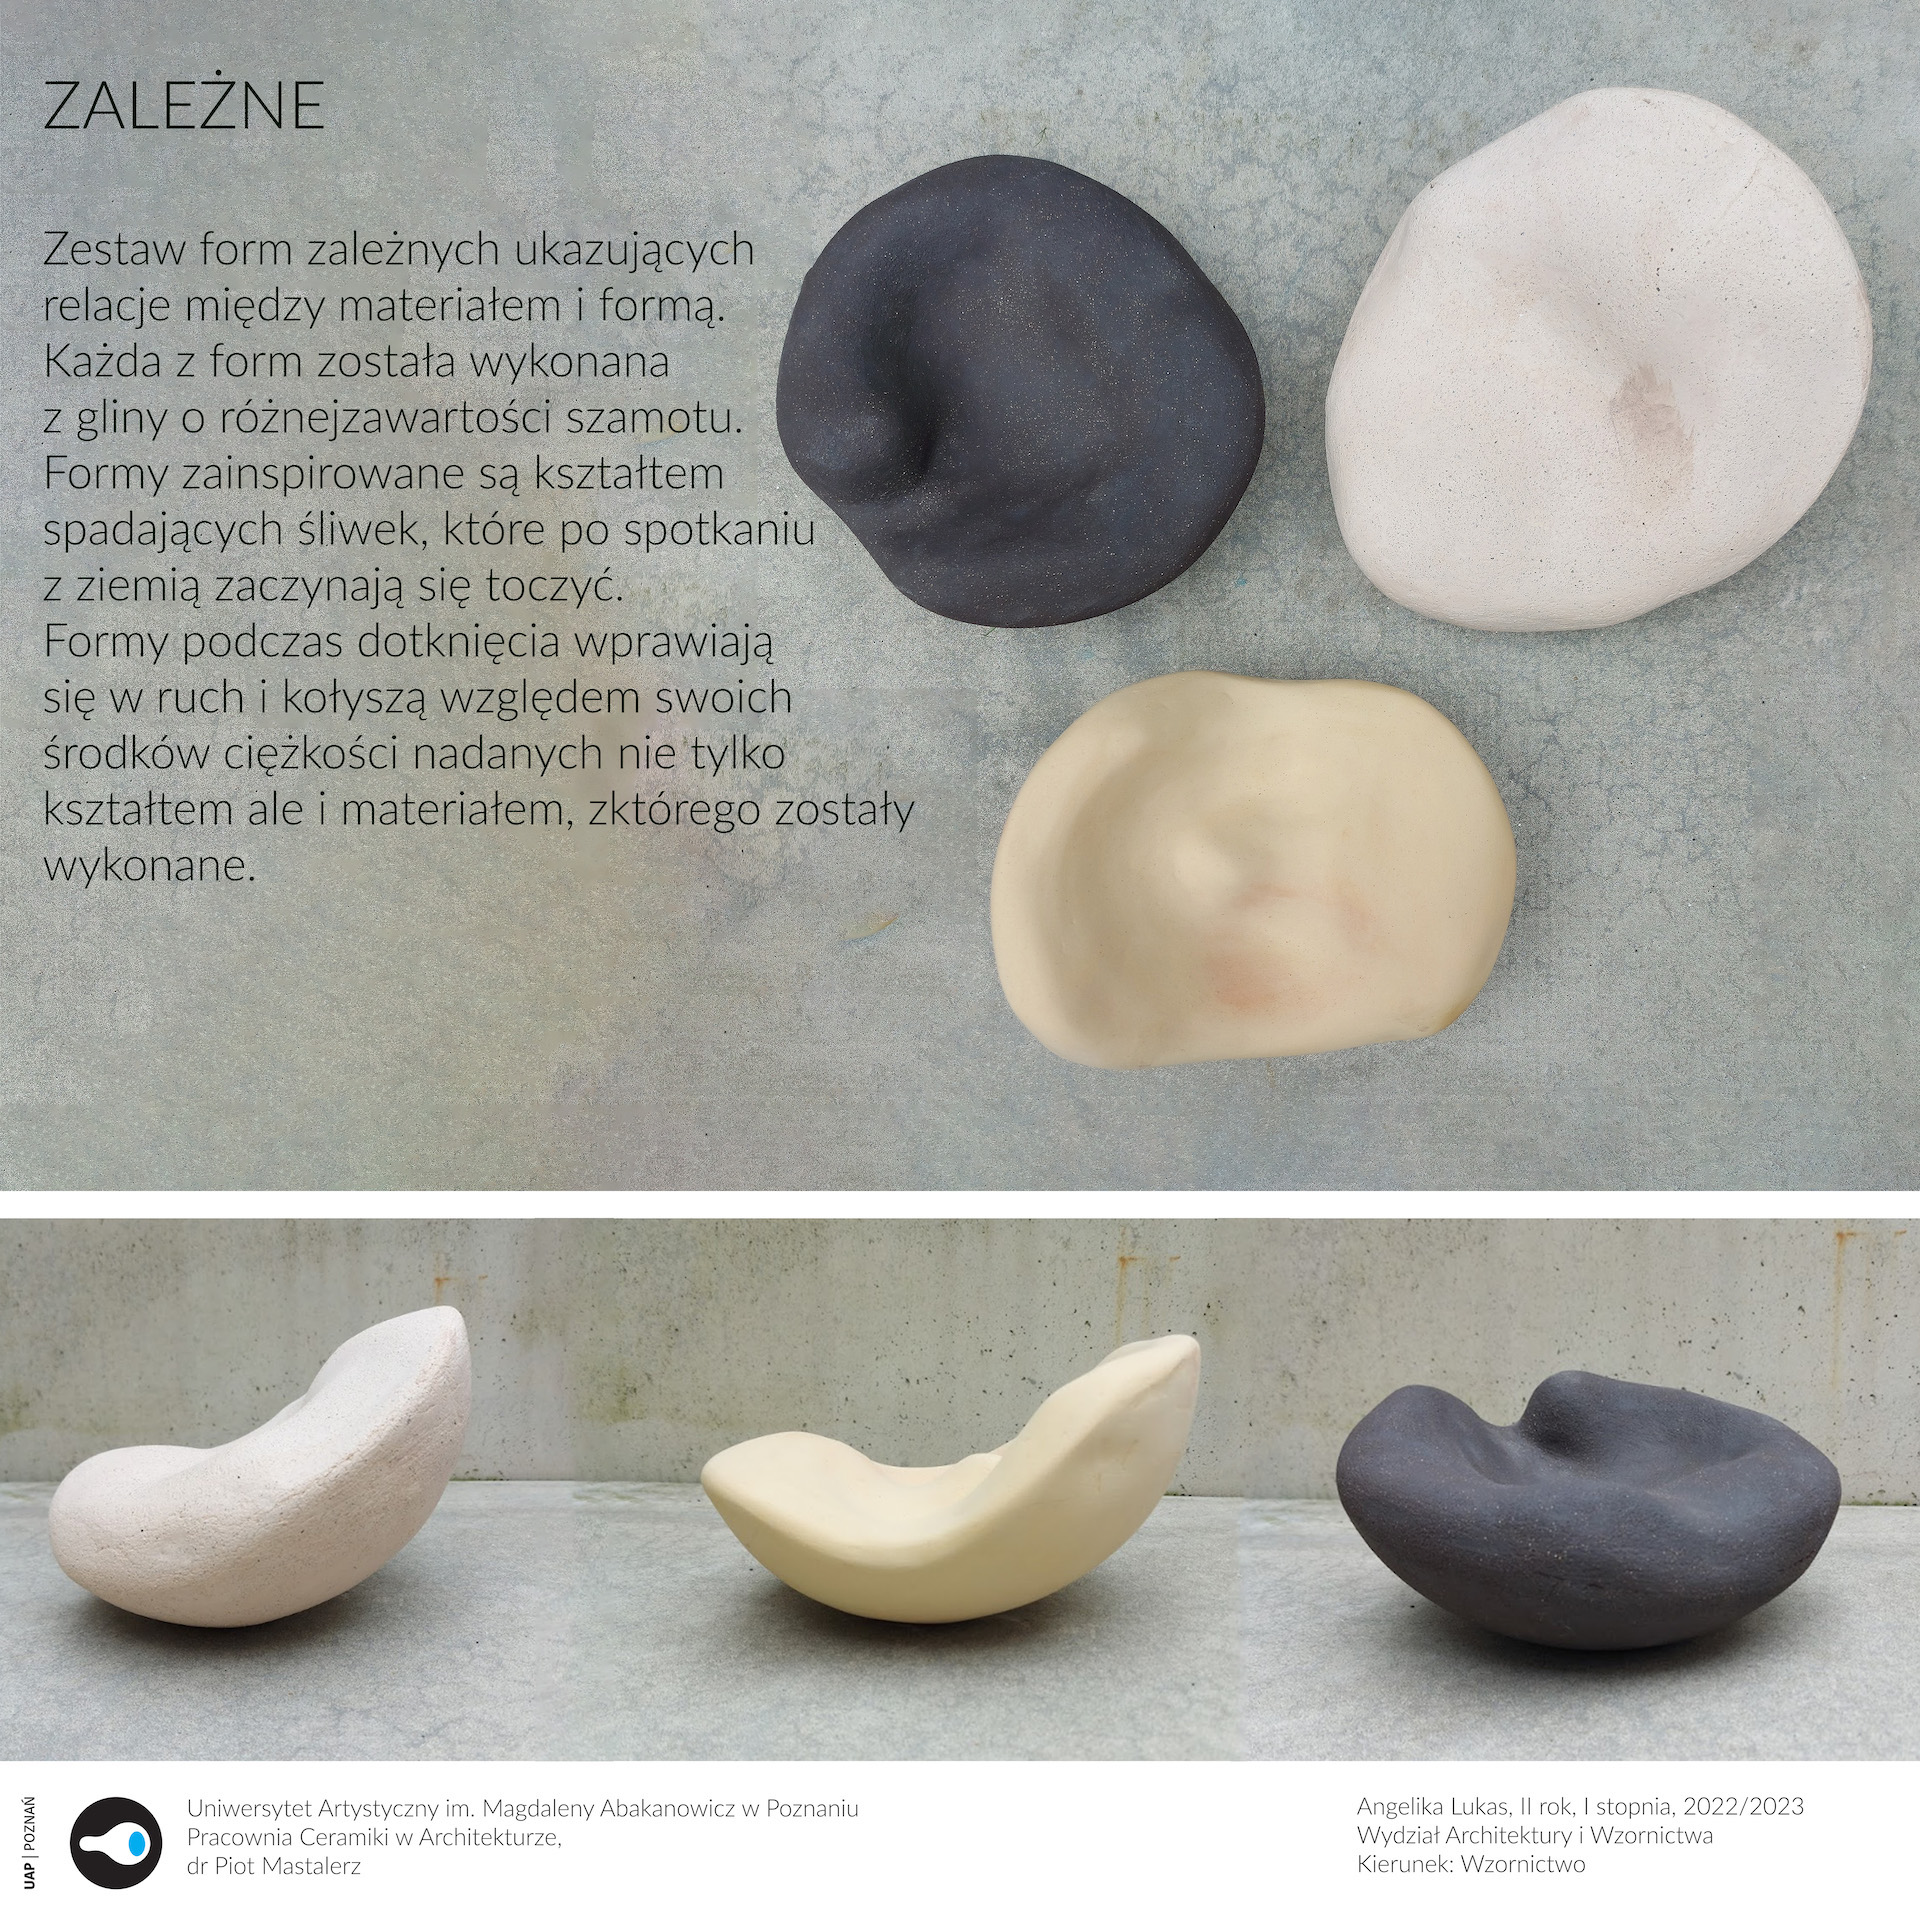 Opis alternatywny: Plansza przedstawia trzy formy ceramiczne w naturalnych barwach wypalonej gliny.